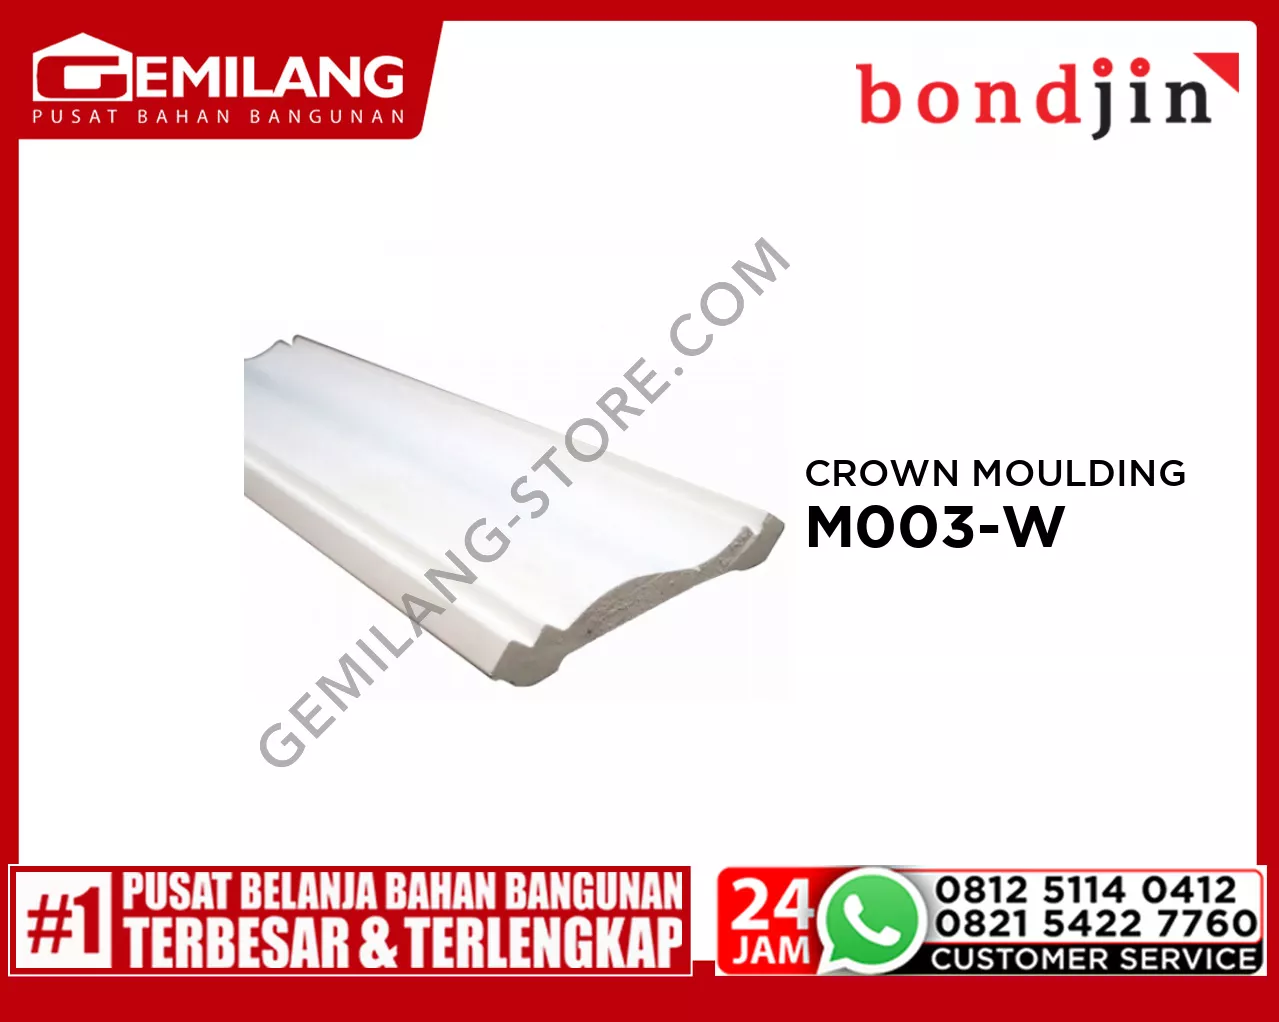 BONDJIN CROWN MOULDING M003-W (100 x 2400 x 15T)